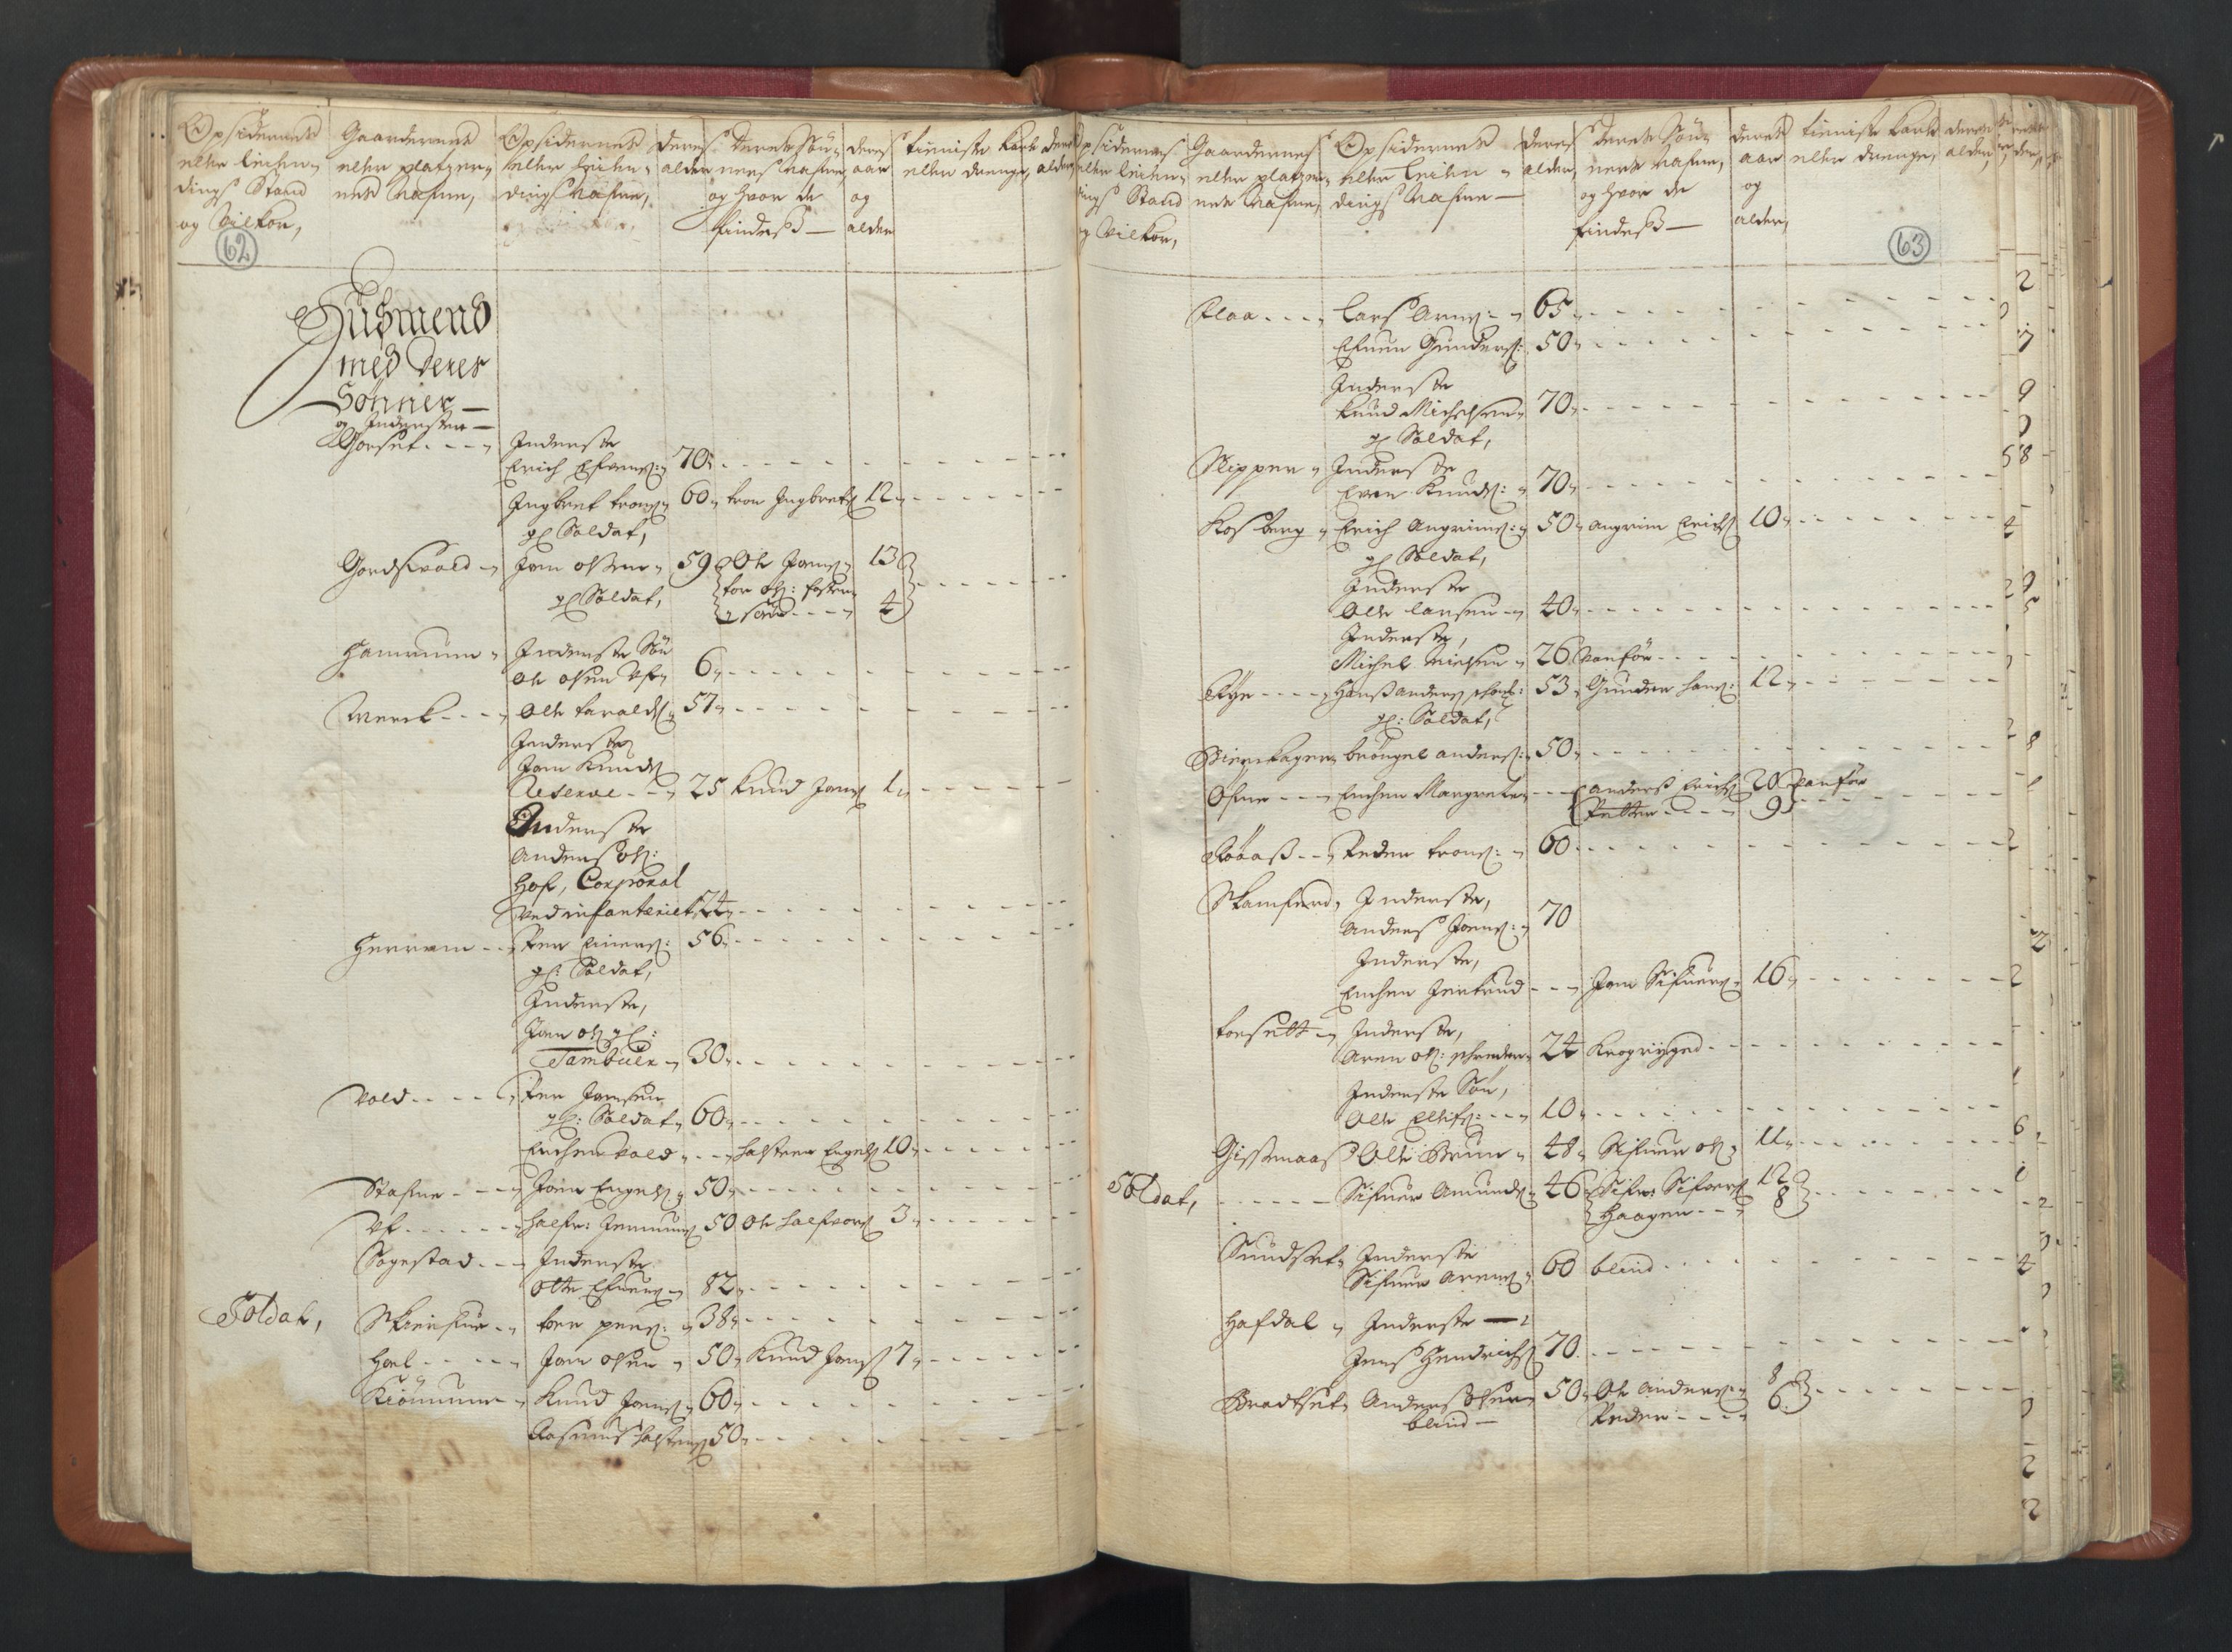 RA, Manntallet 1701, nr. 13: Orkdal fogderi og Gauldal fogderi med Røros kobberverk, 1701, s. 62-63